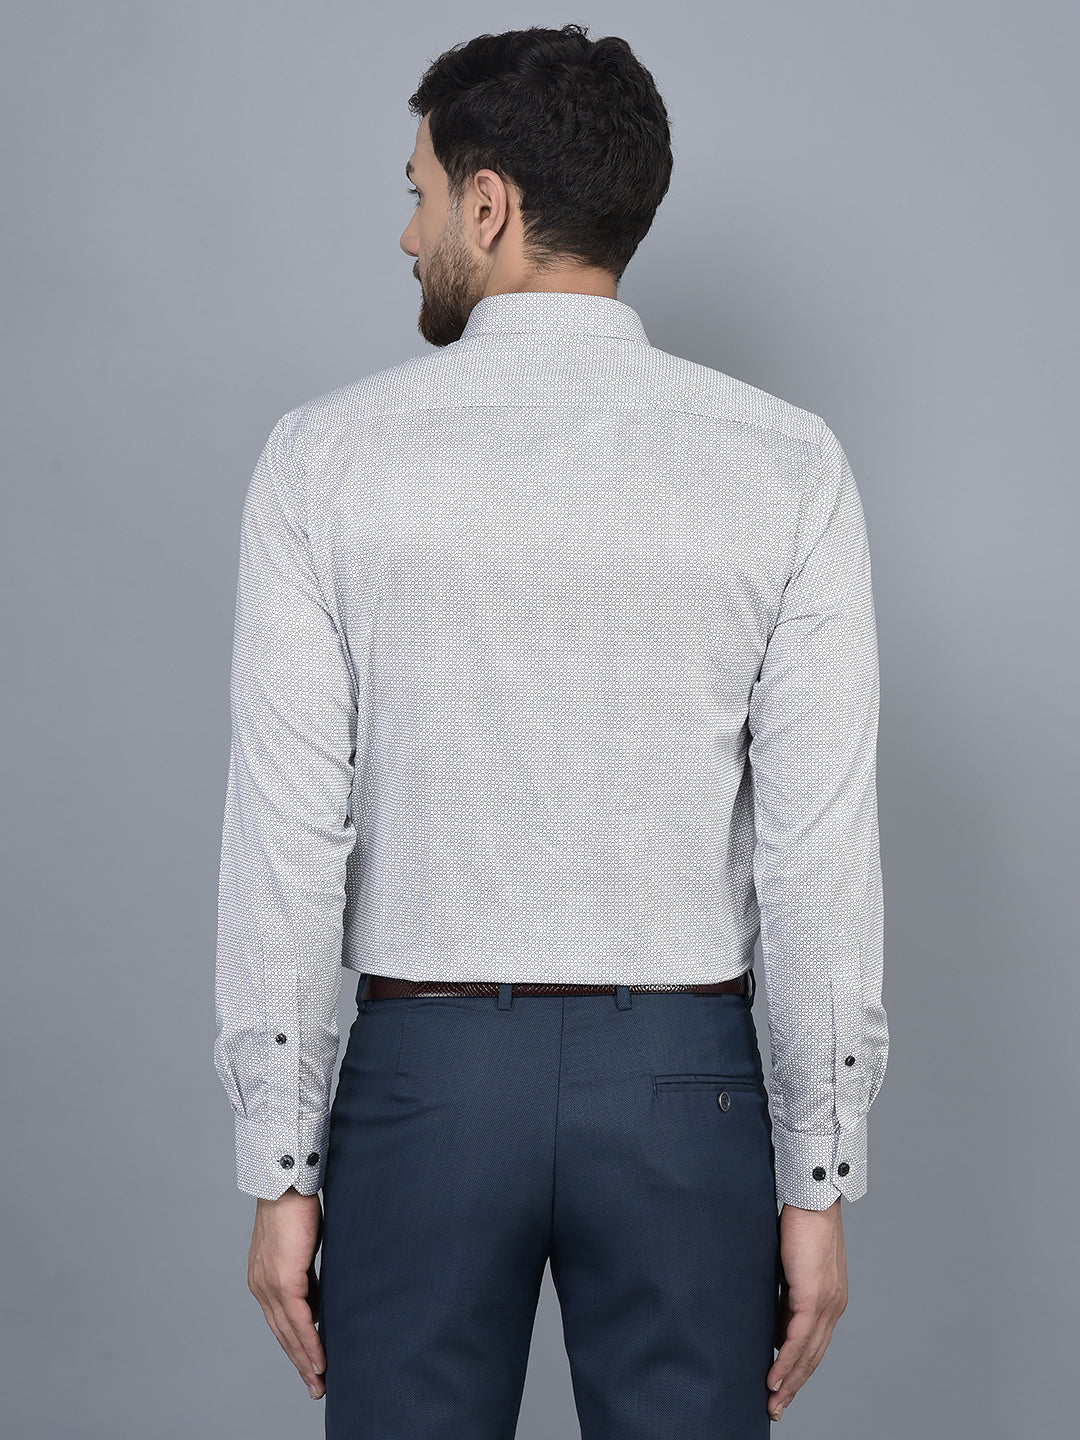 Cobb Grey Printed Slim Fit Formal Shirt